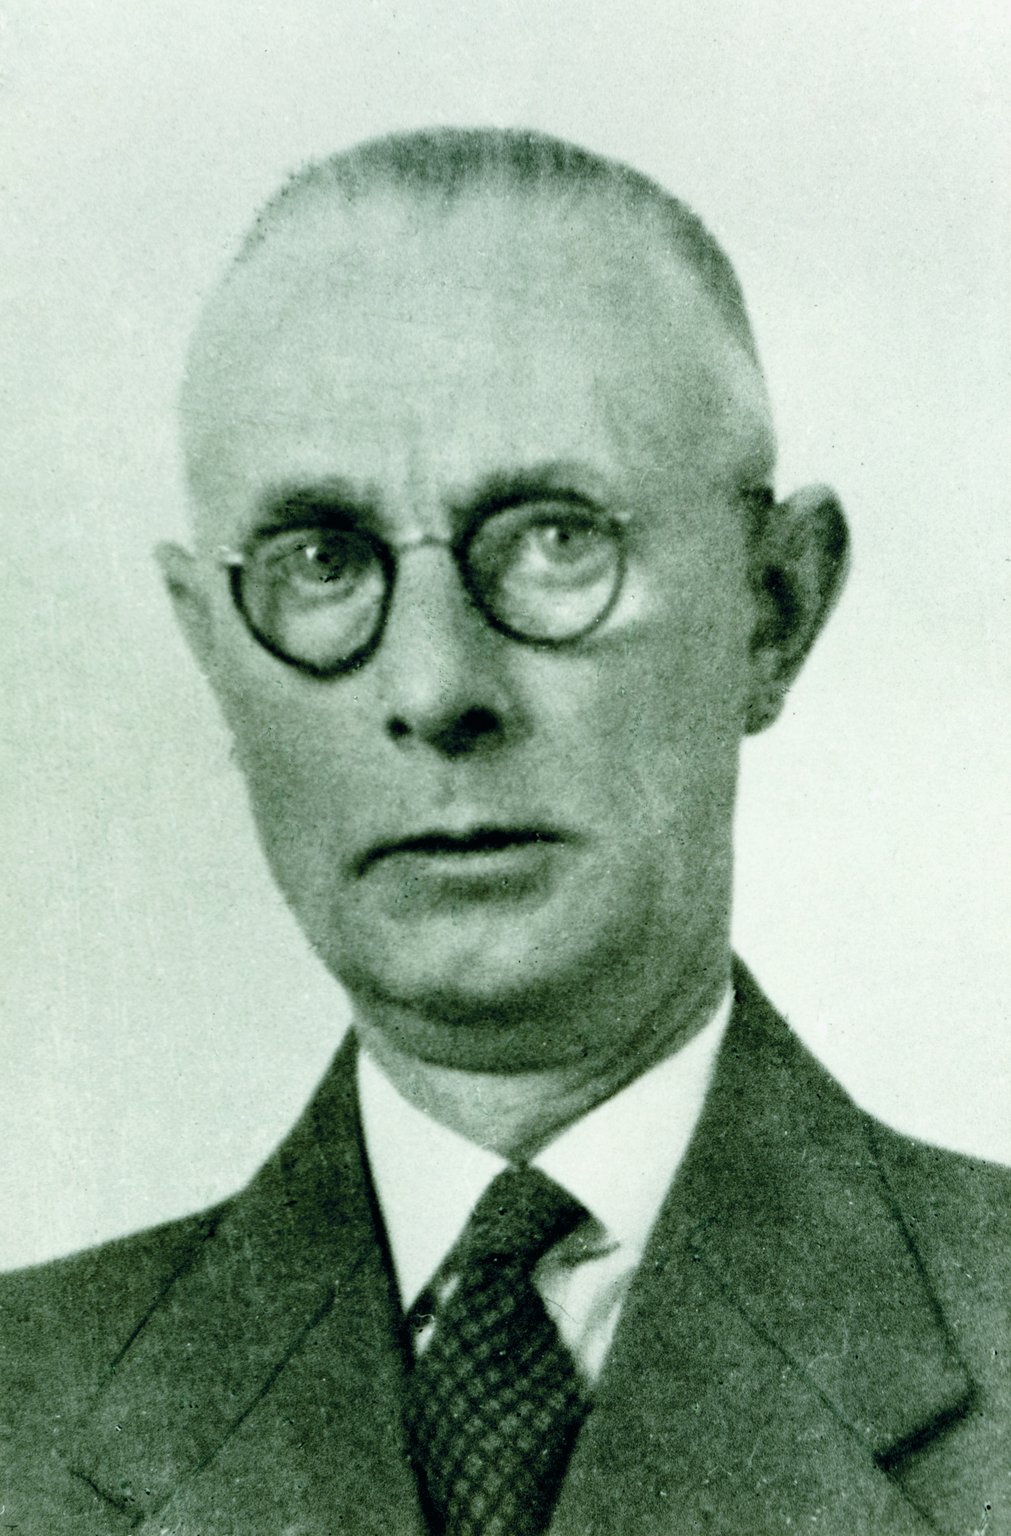 Johannes Kleiman, around 1950.